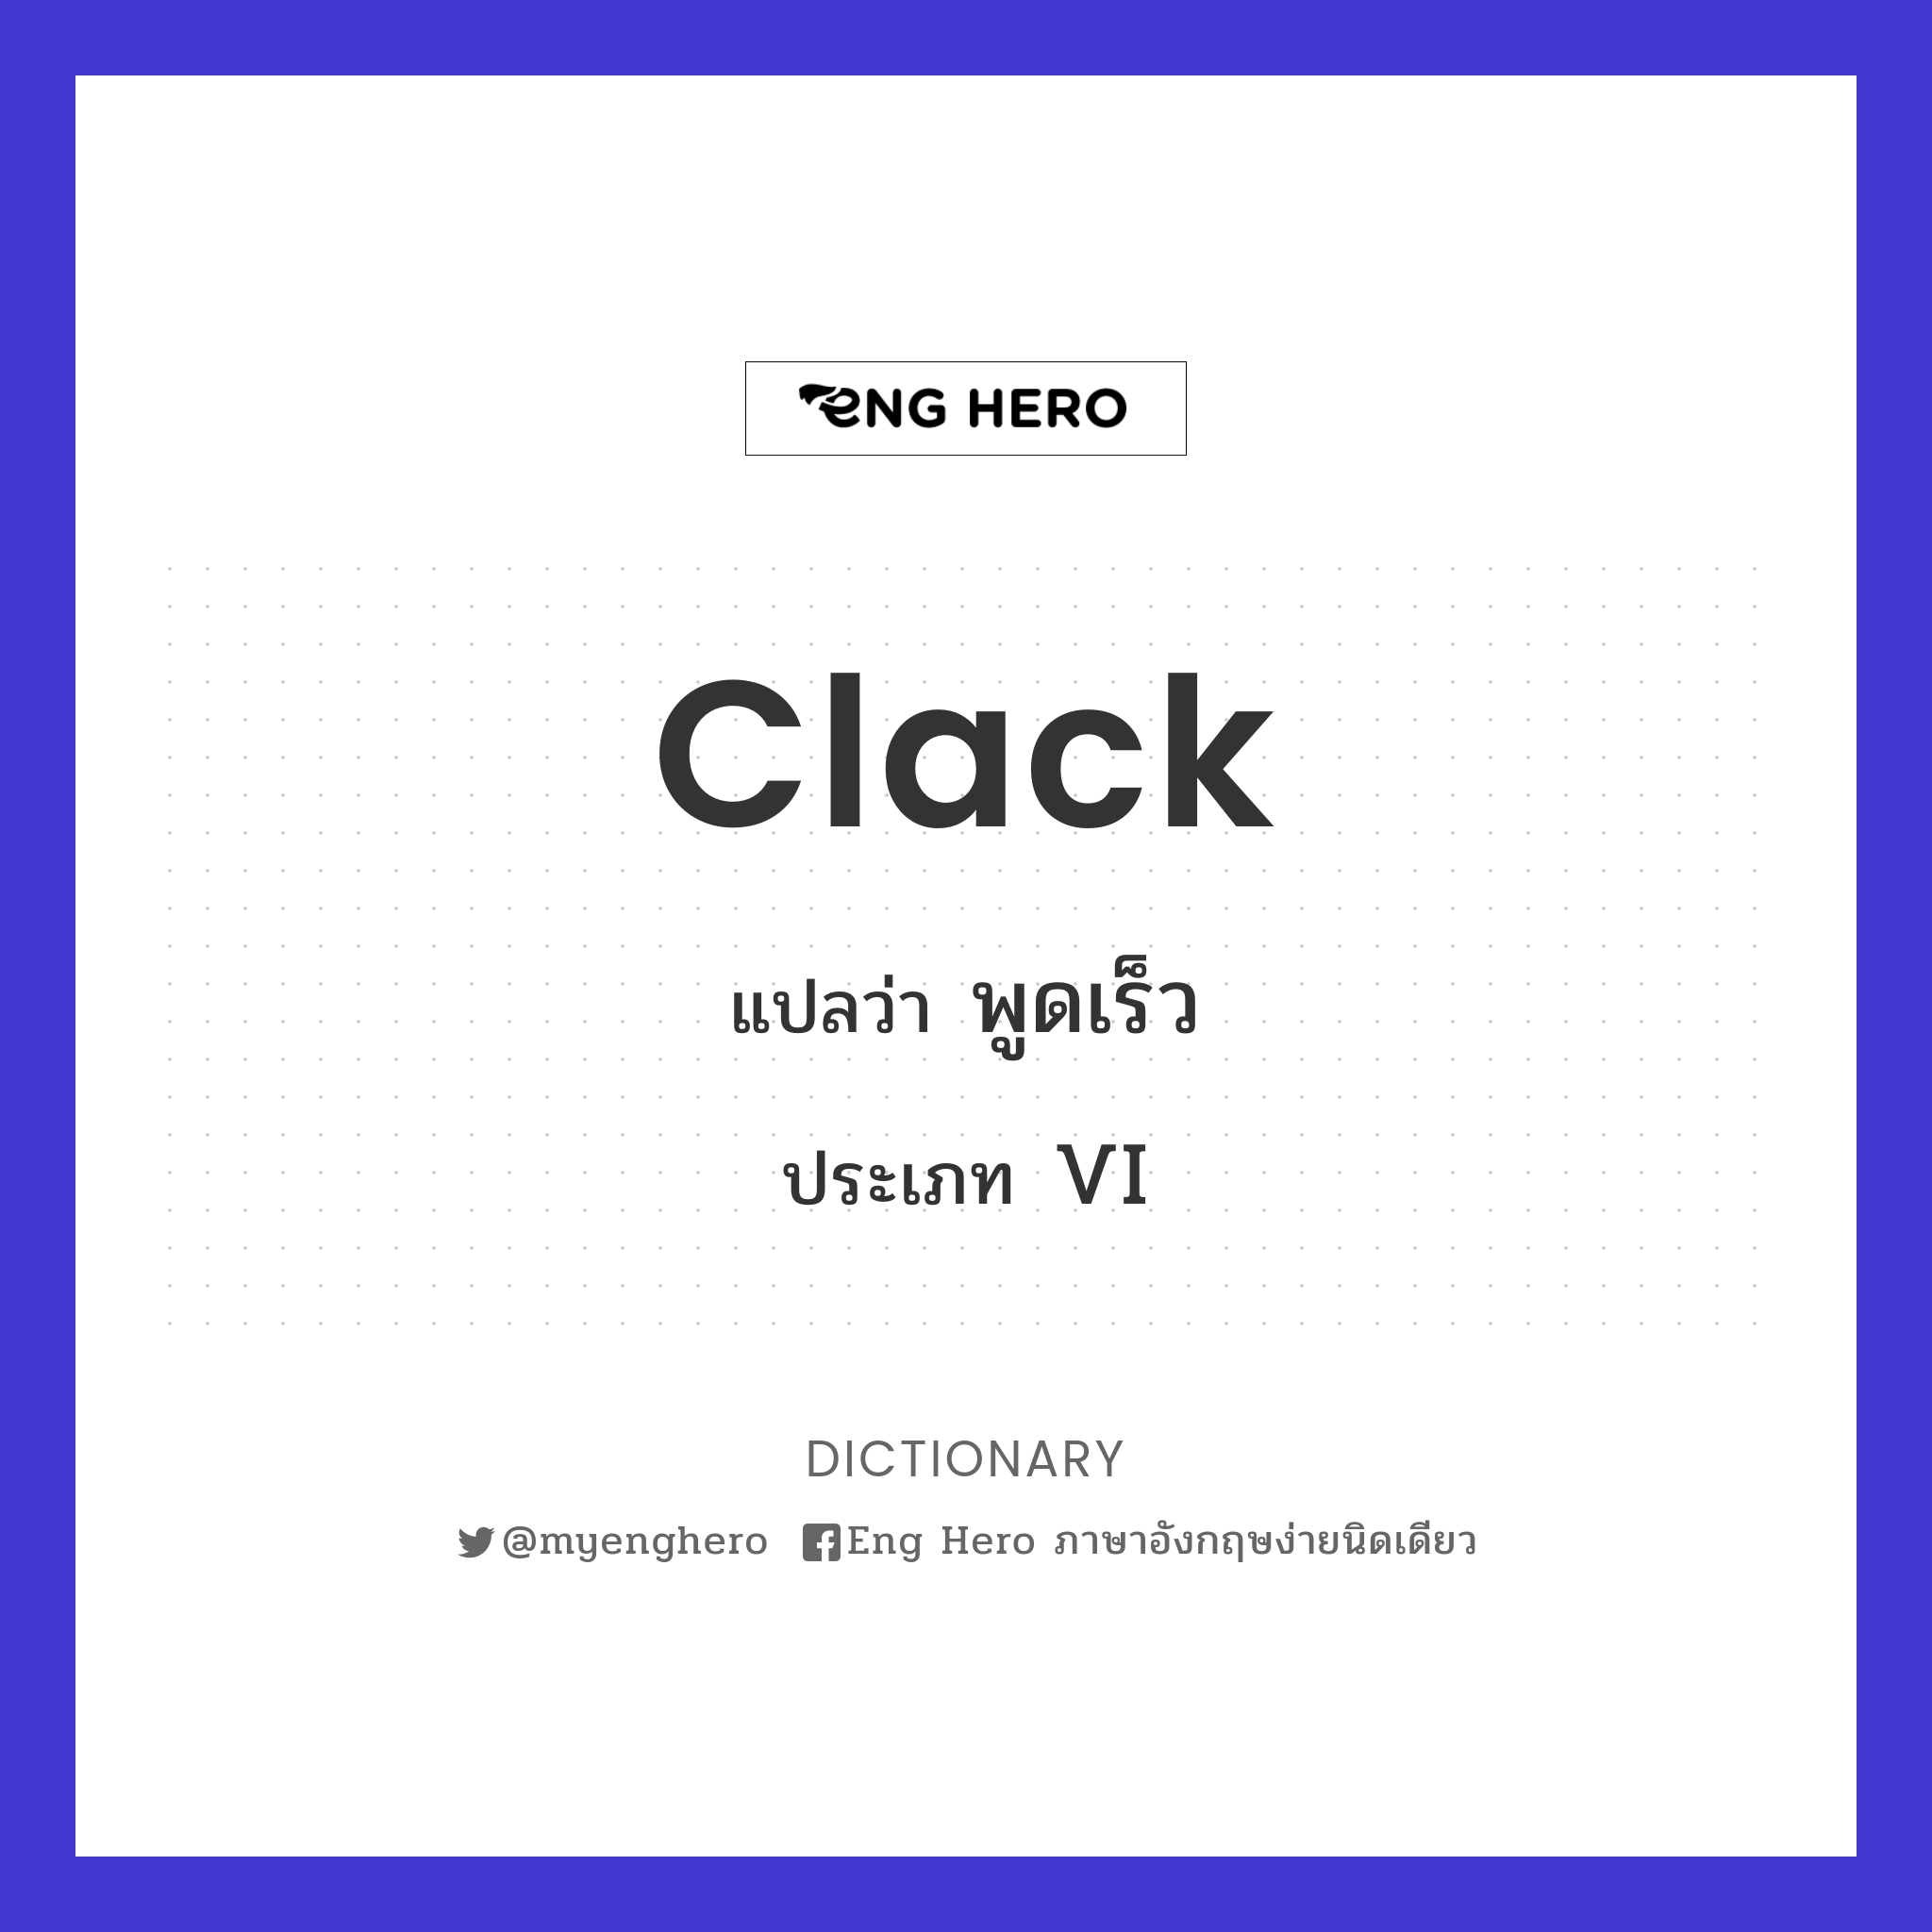 clack